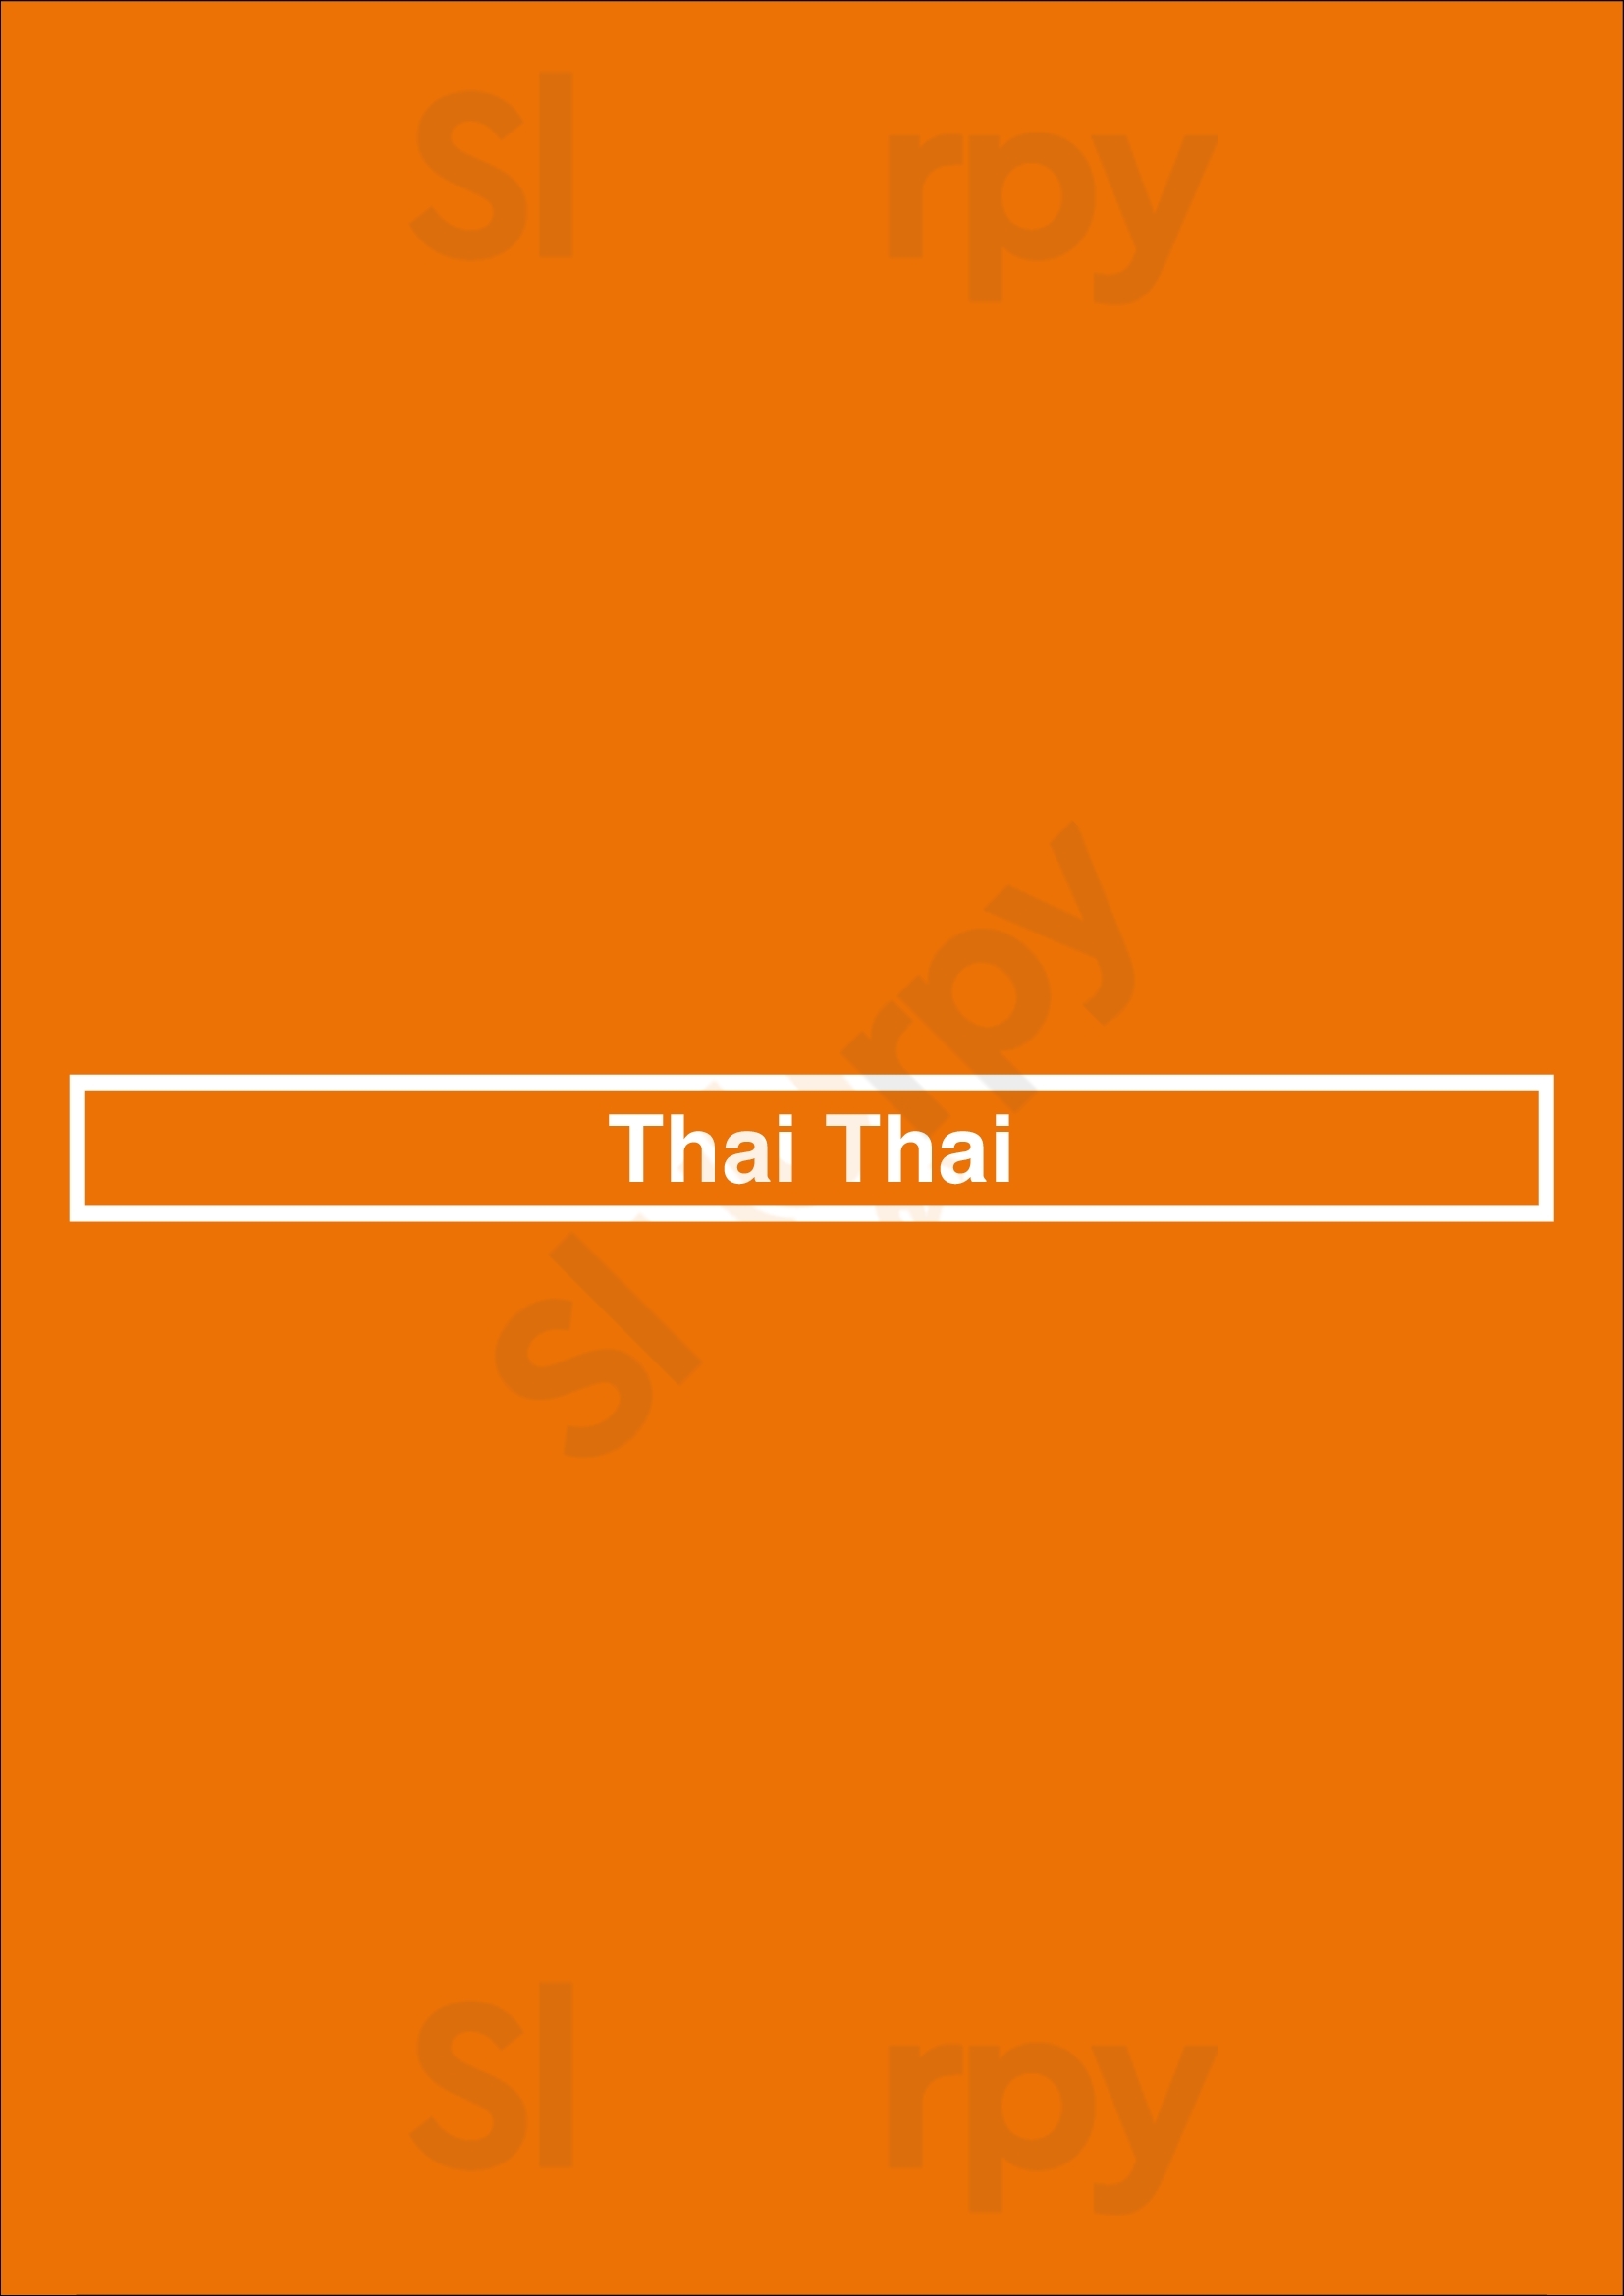 Thai Thai Warszawa Menu - 1